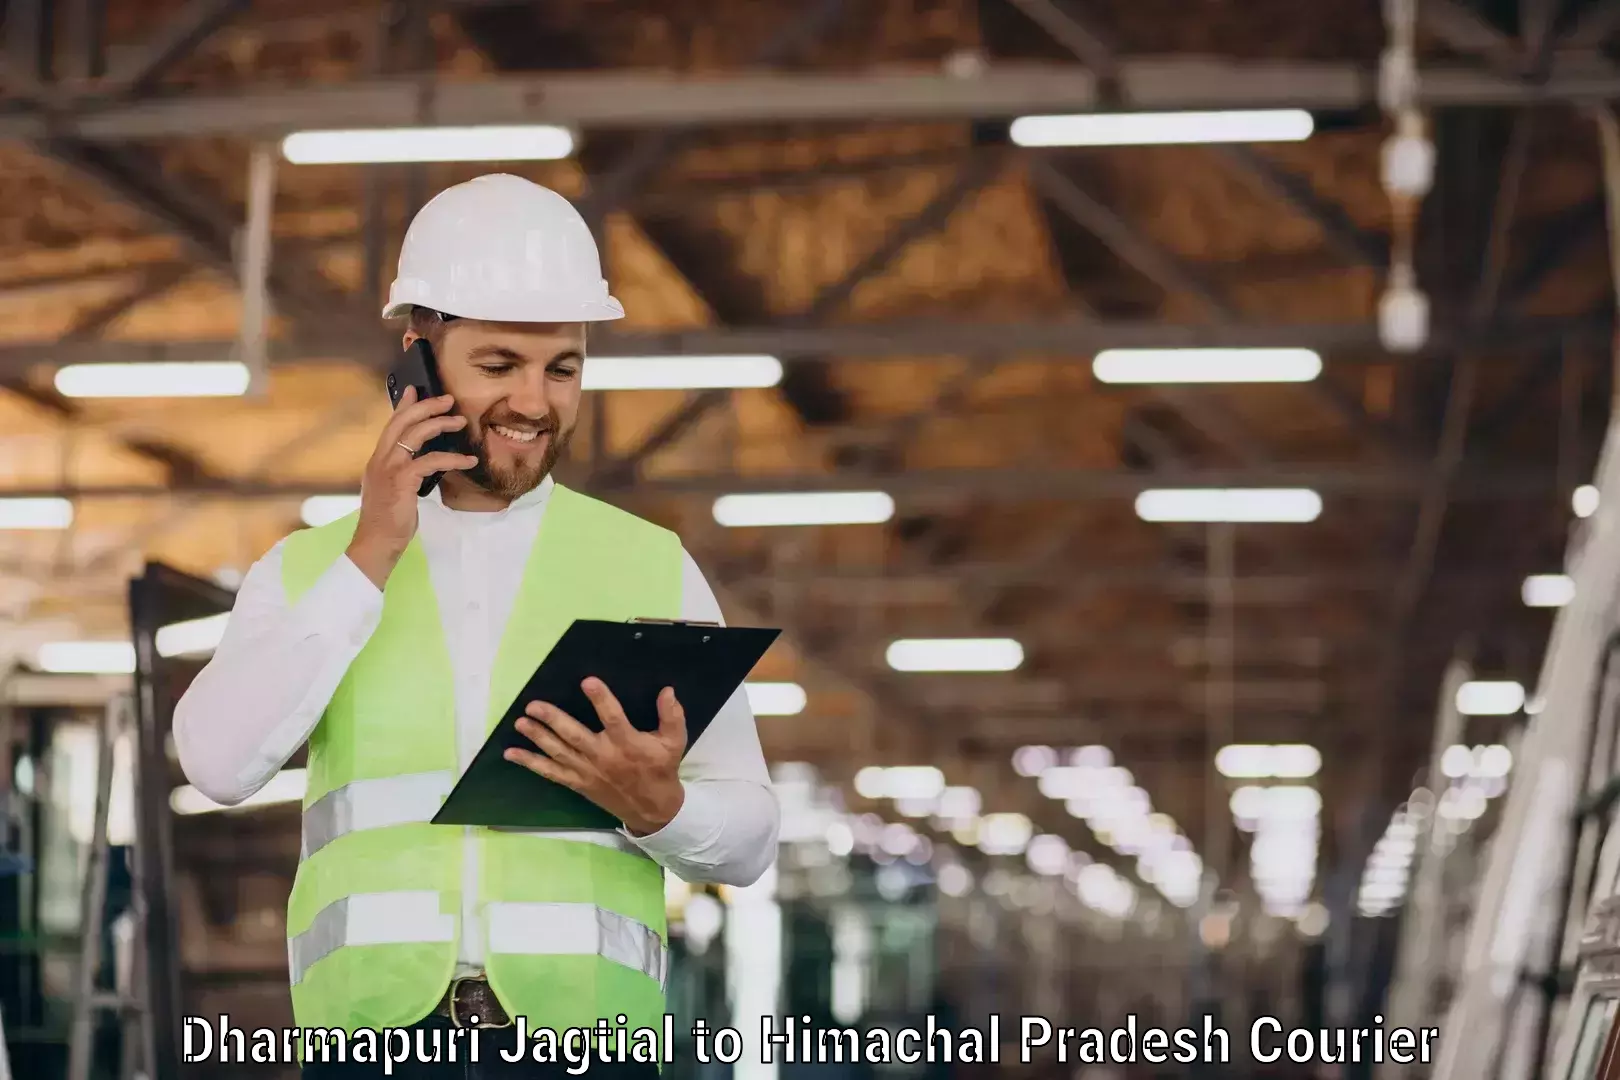 Customer-focused courier Dharmapuri Jagtial to Rehan